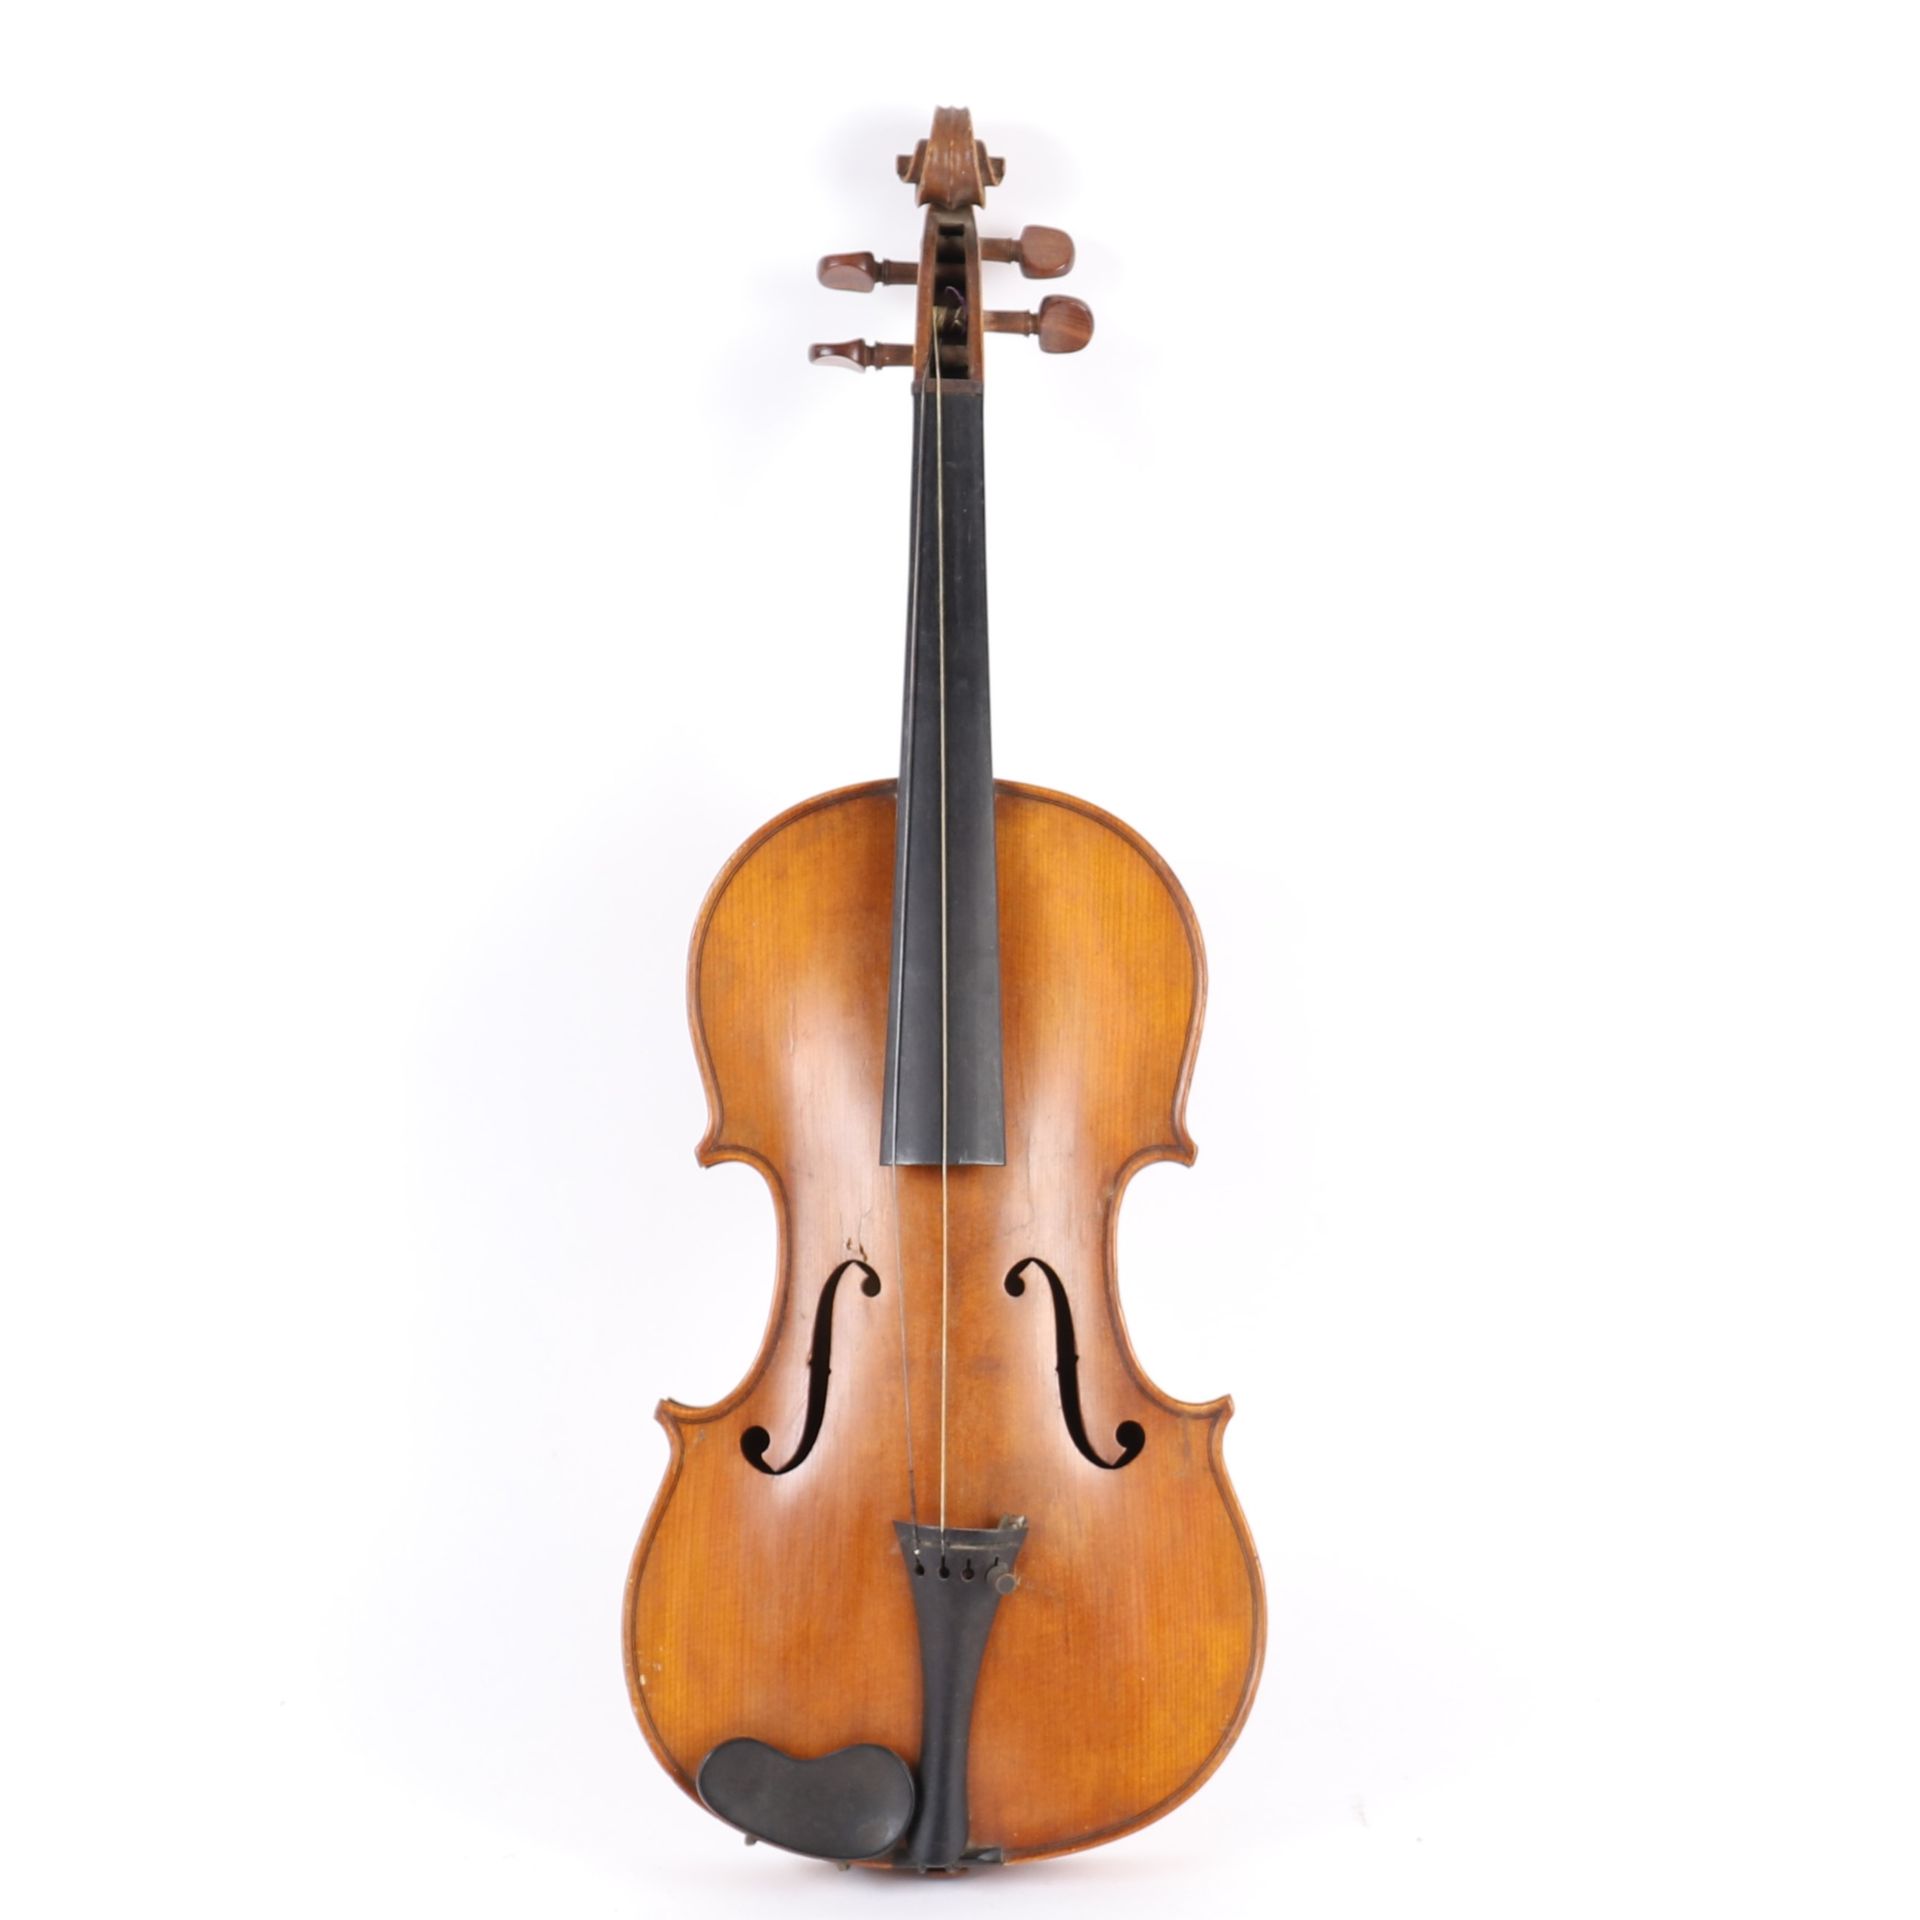 Null 米勒库尔中音大提琴
带有 "Marquis de l'air "标签
有印章
带盒子
长：35.9 厘米
原装，有虫蛀痕迹